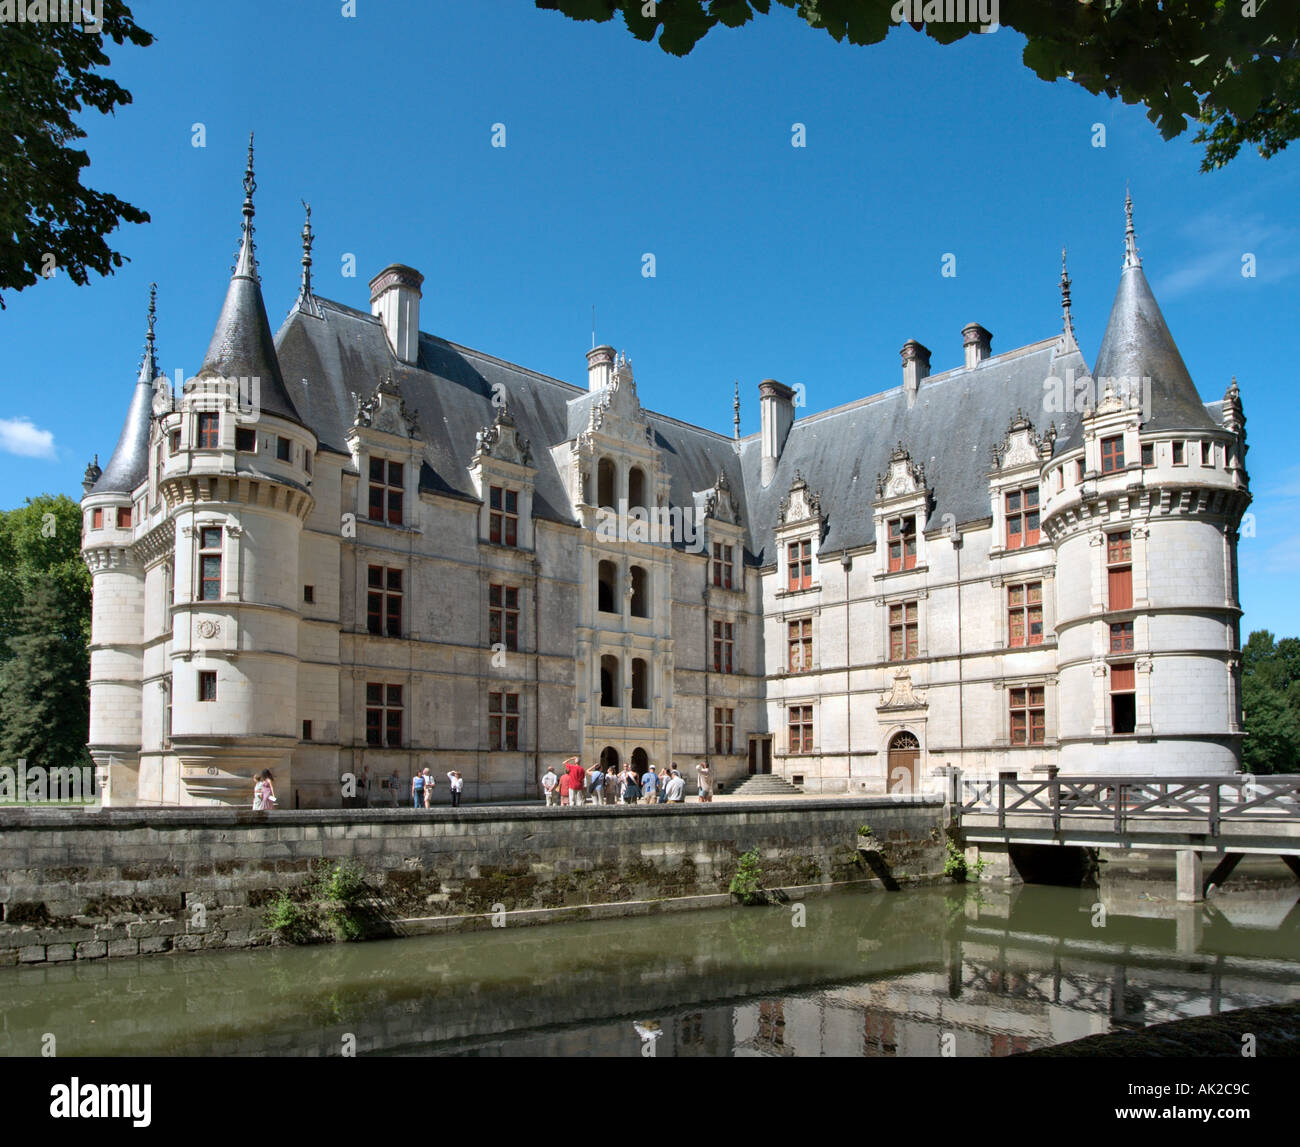 Chateau d'Azay-le-Rideau, la vallée de la Loire, France Banque D'Images